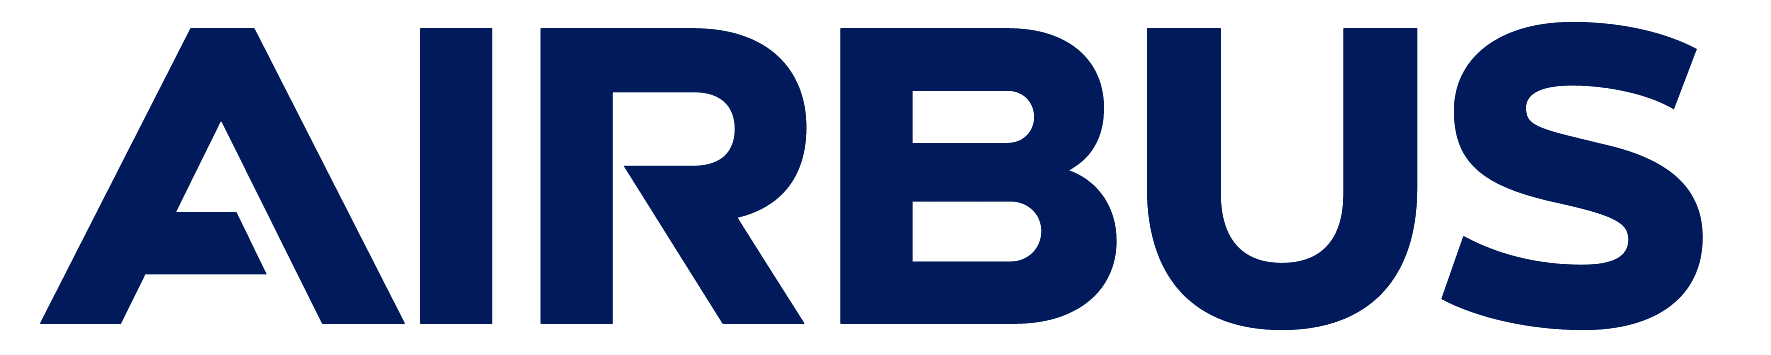 Airbus logo logo